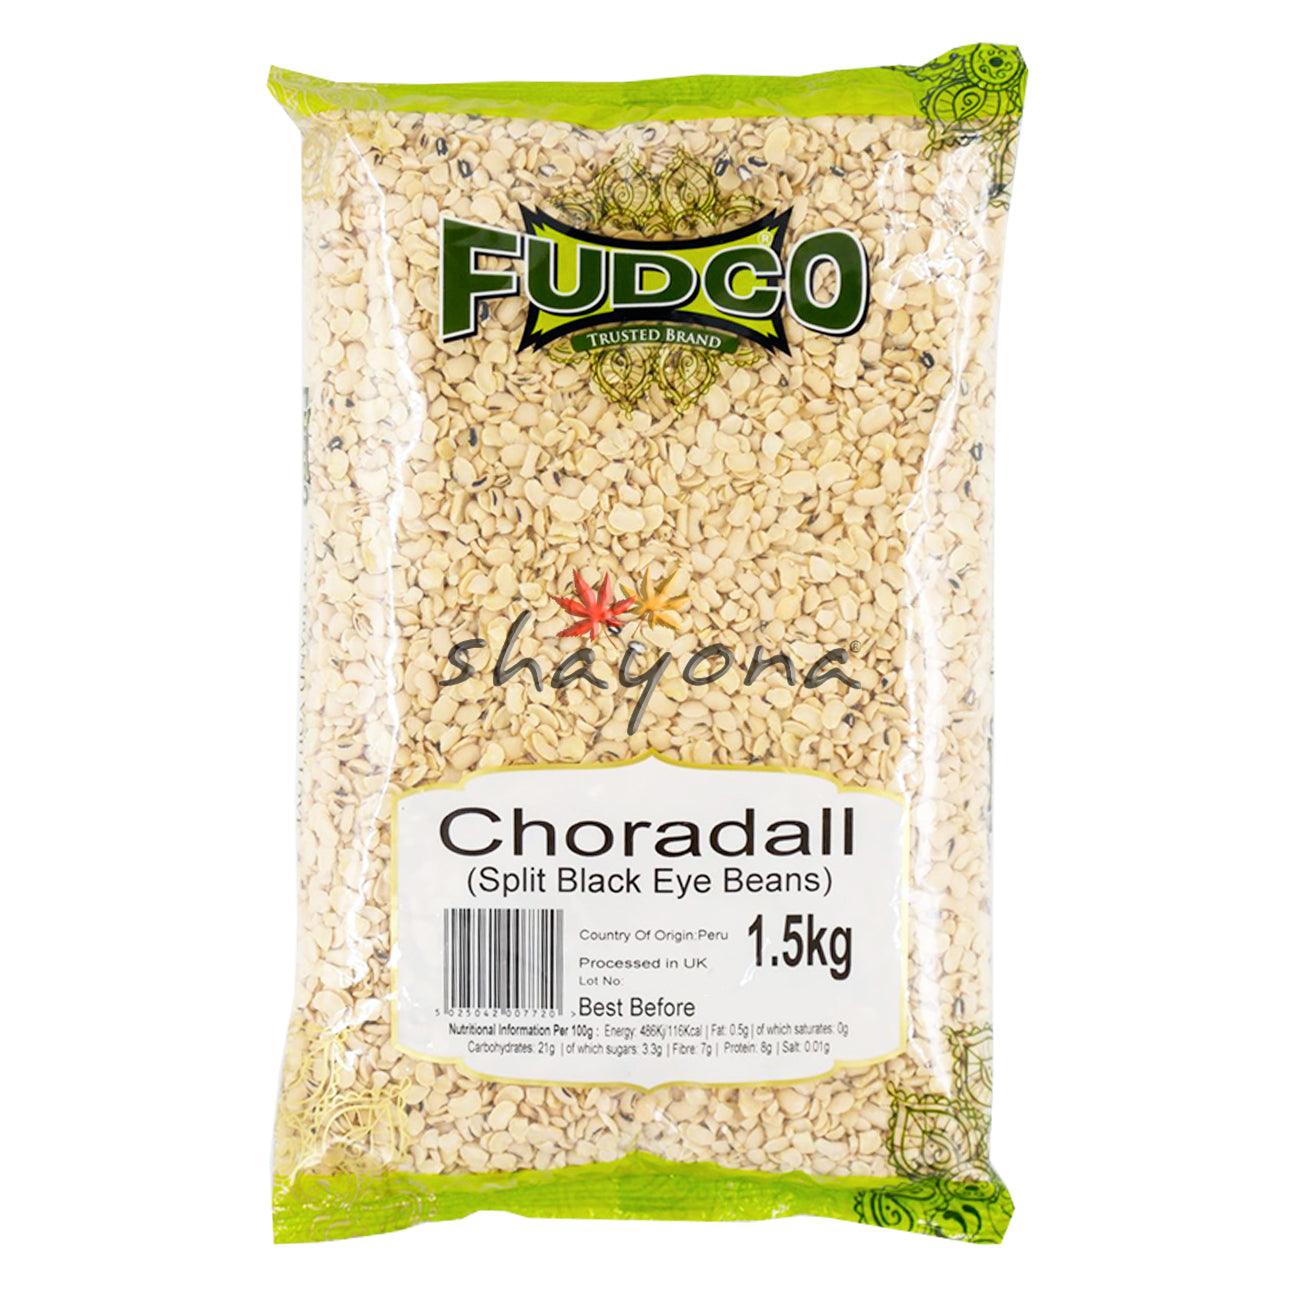 Fudco Choradall - Shayona UK